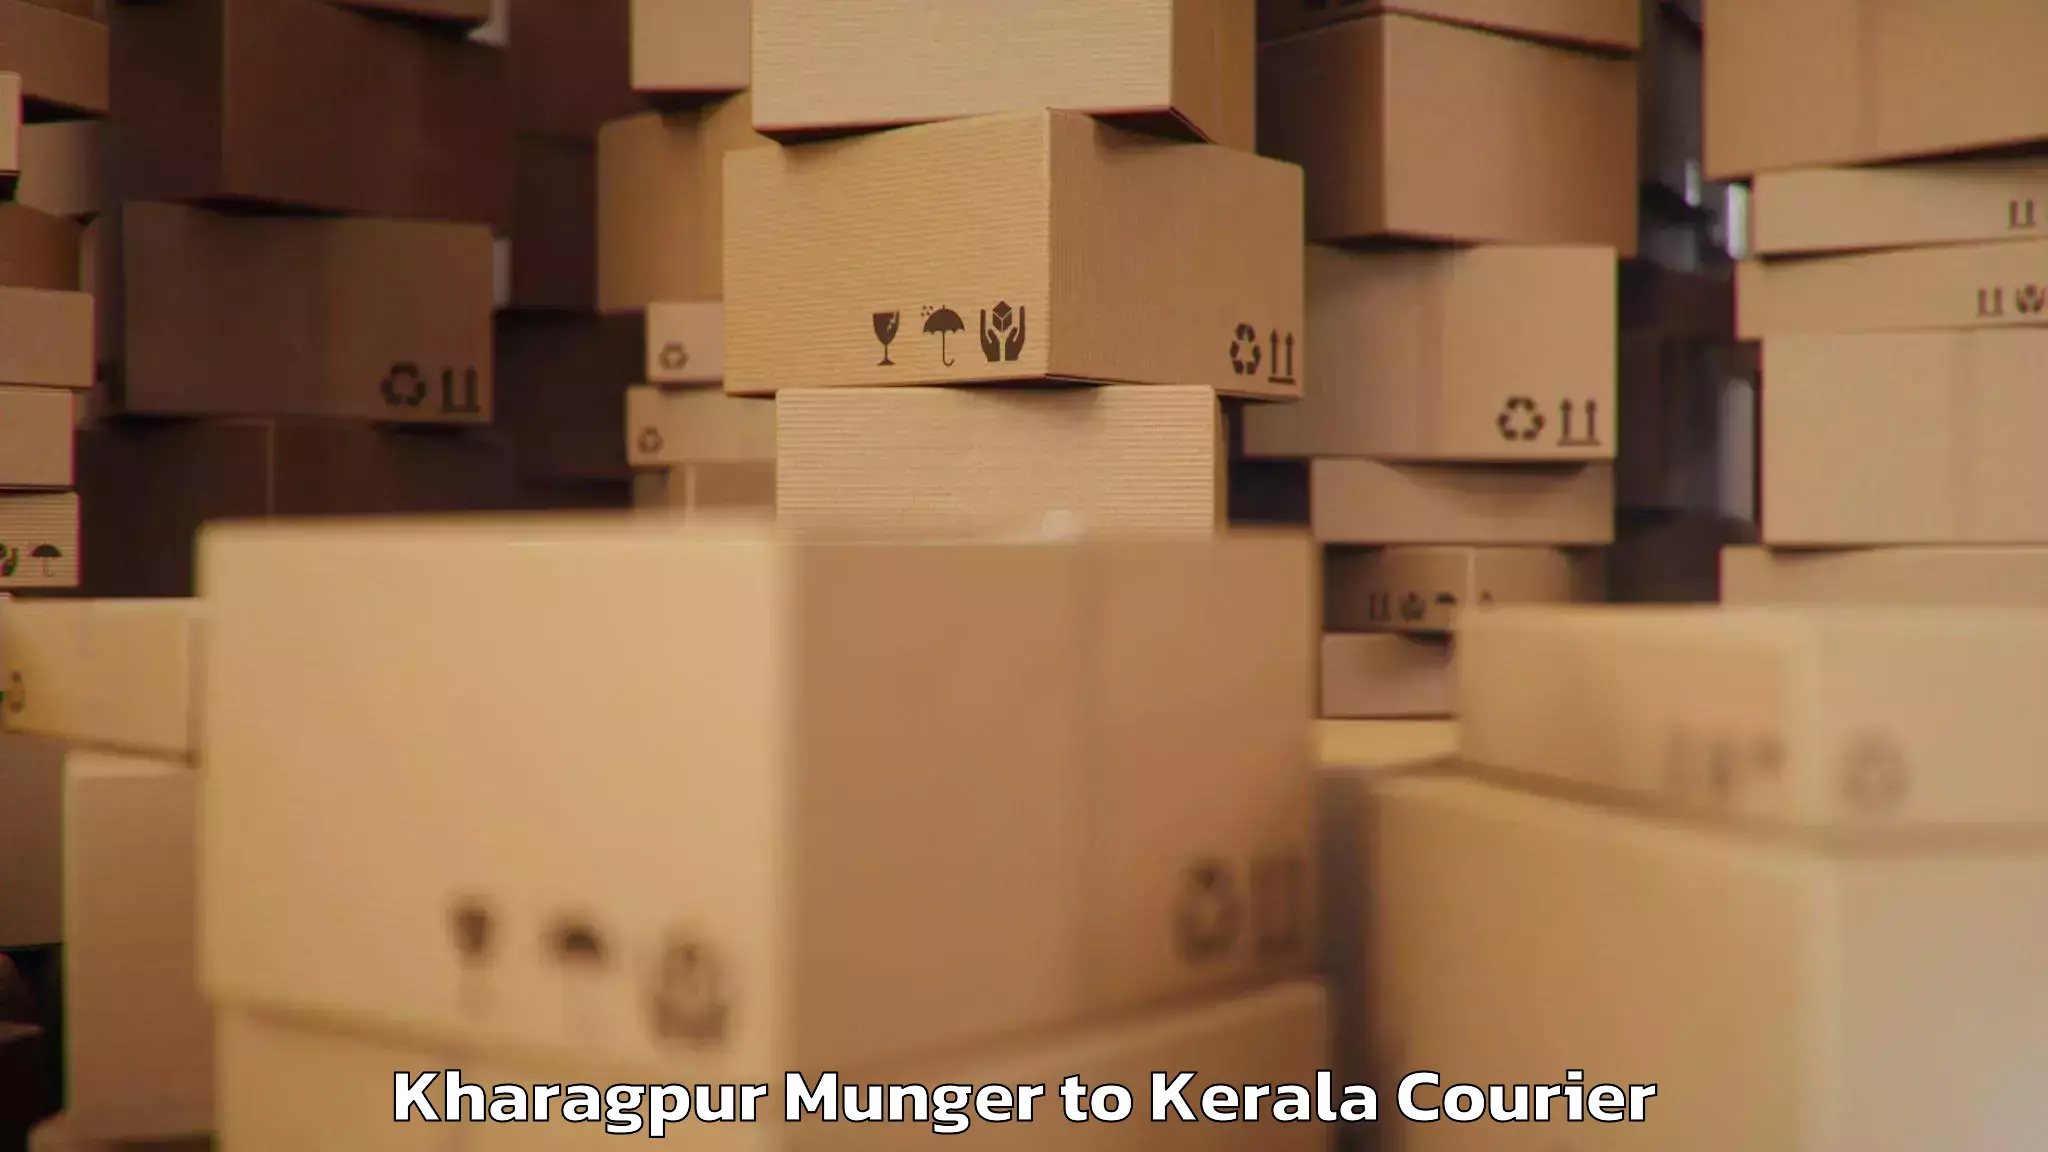 Baggage shipping experts Kharagpur Munger to Kuttikol